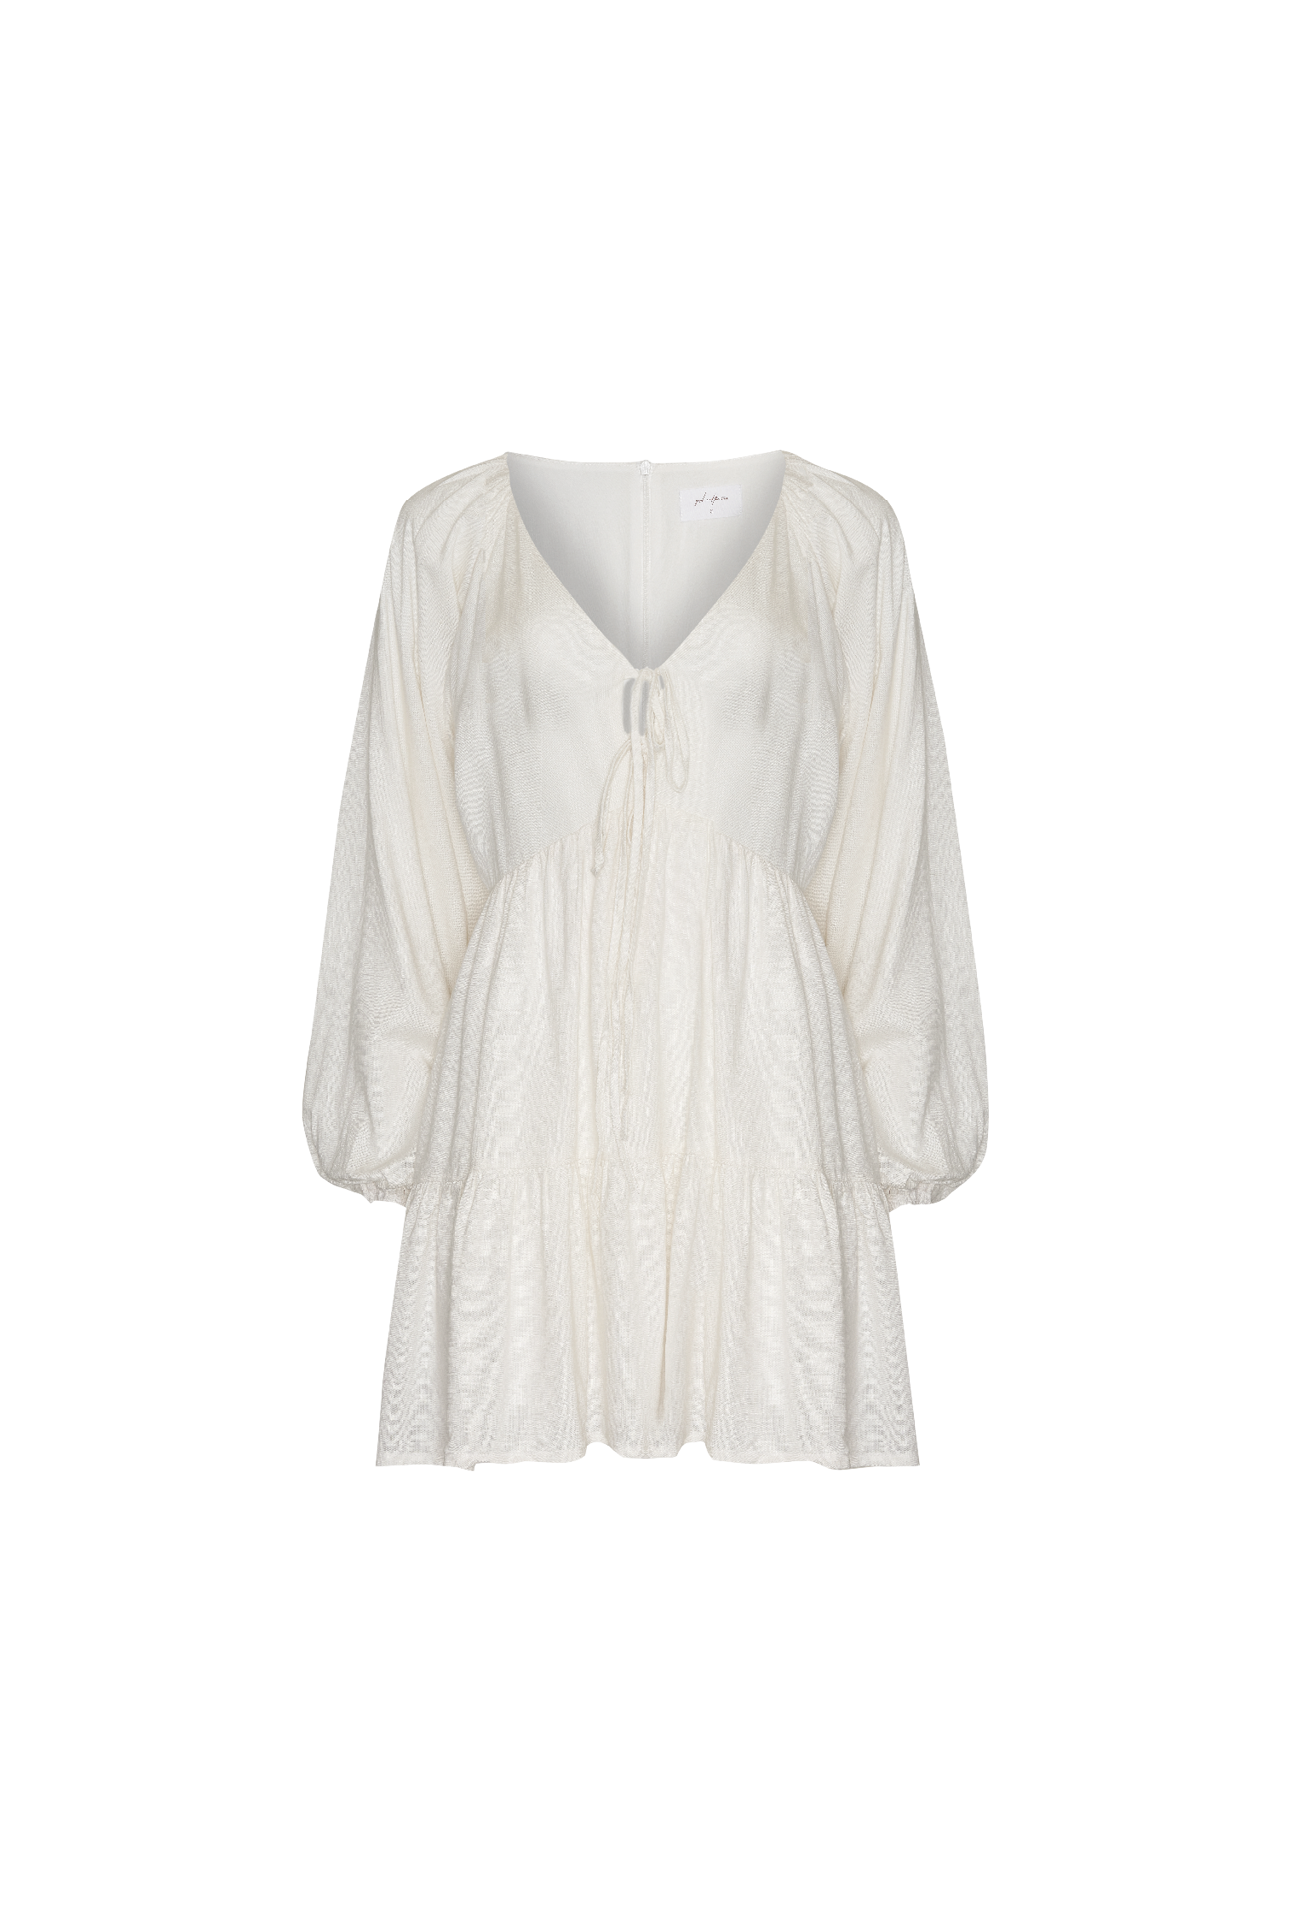 ROSALINA DRESS - WHITE